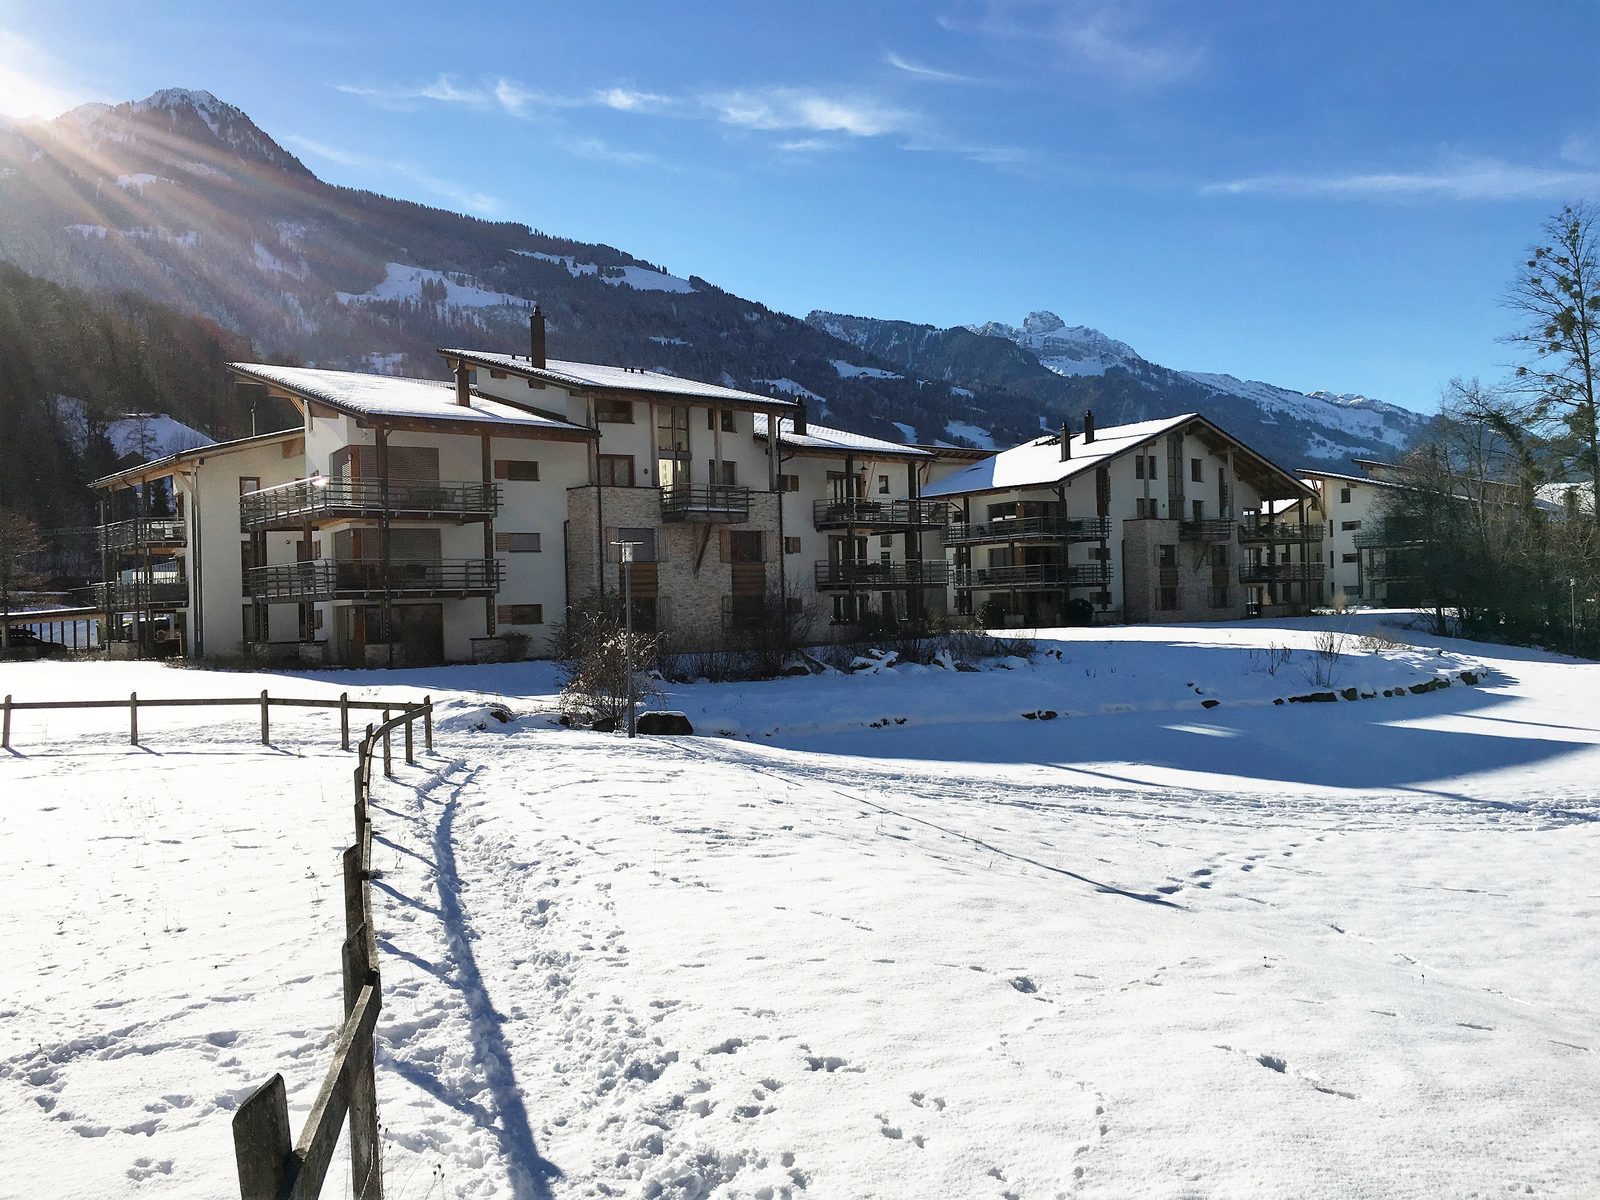 Resort Walensee Heidiland Zwitserland, aan de voet van de Flumserberg voor een ideale wintersportvakantie op de ski’s